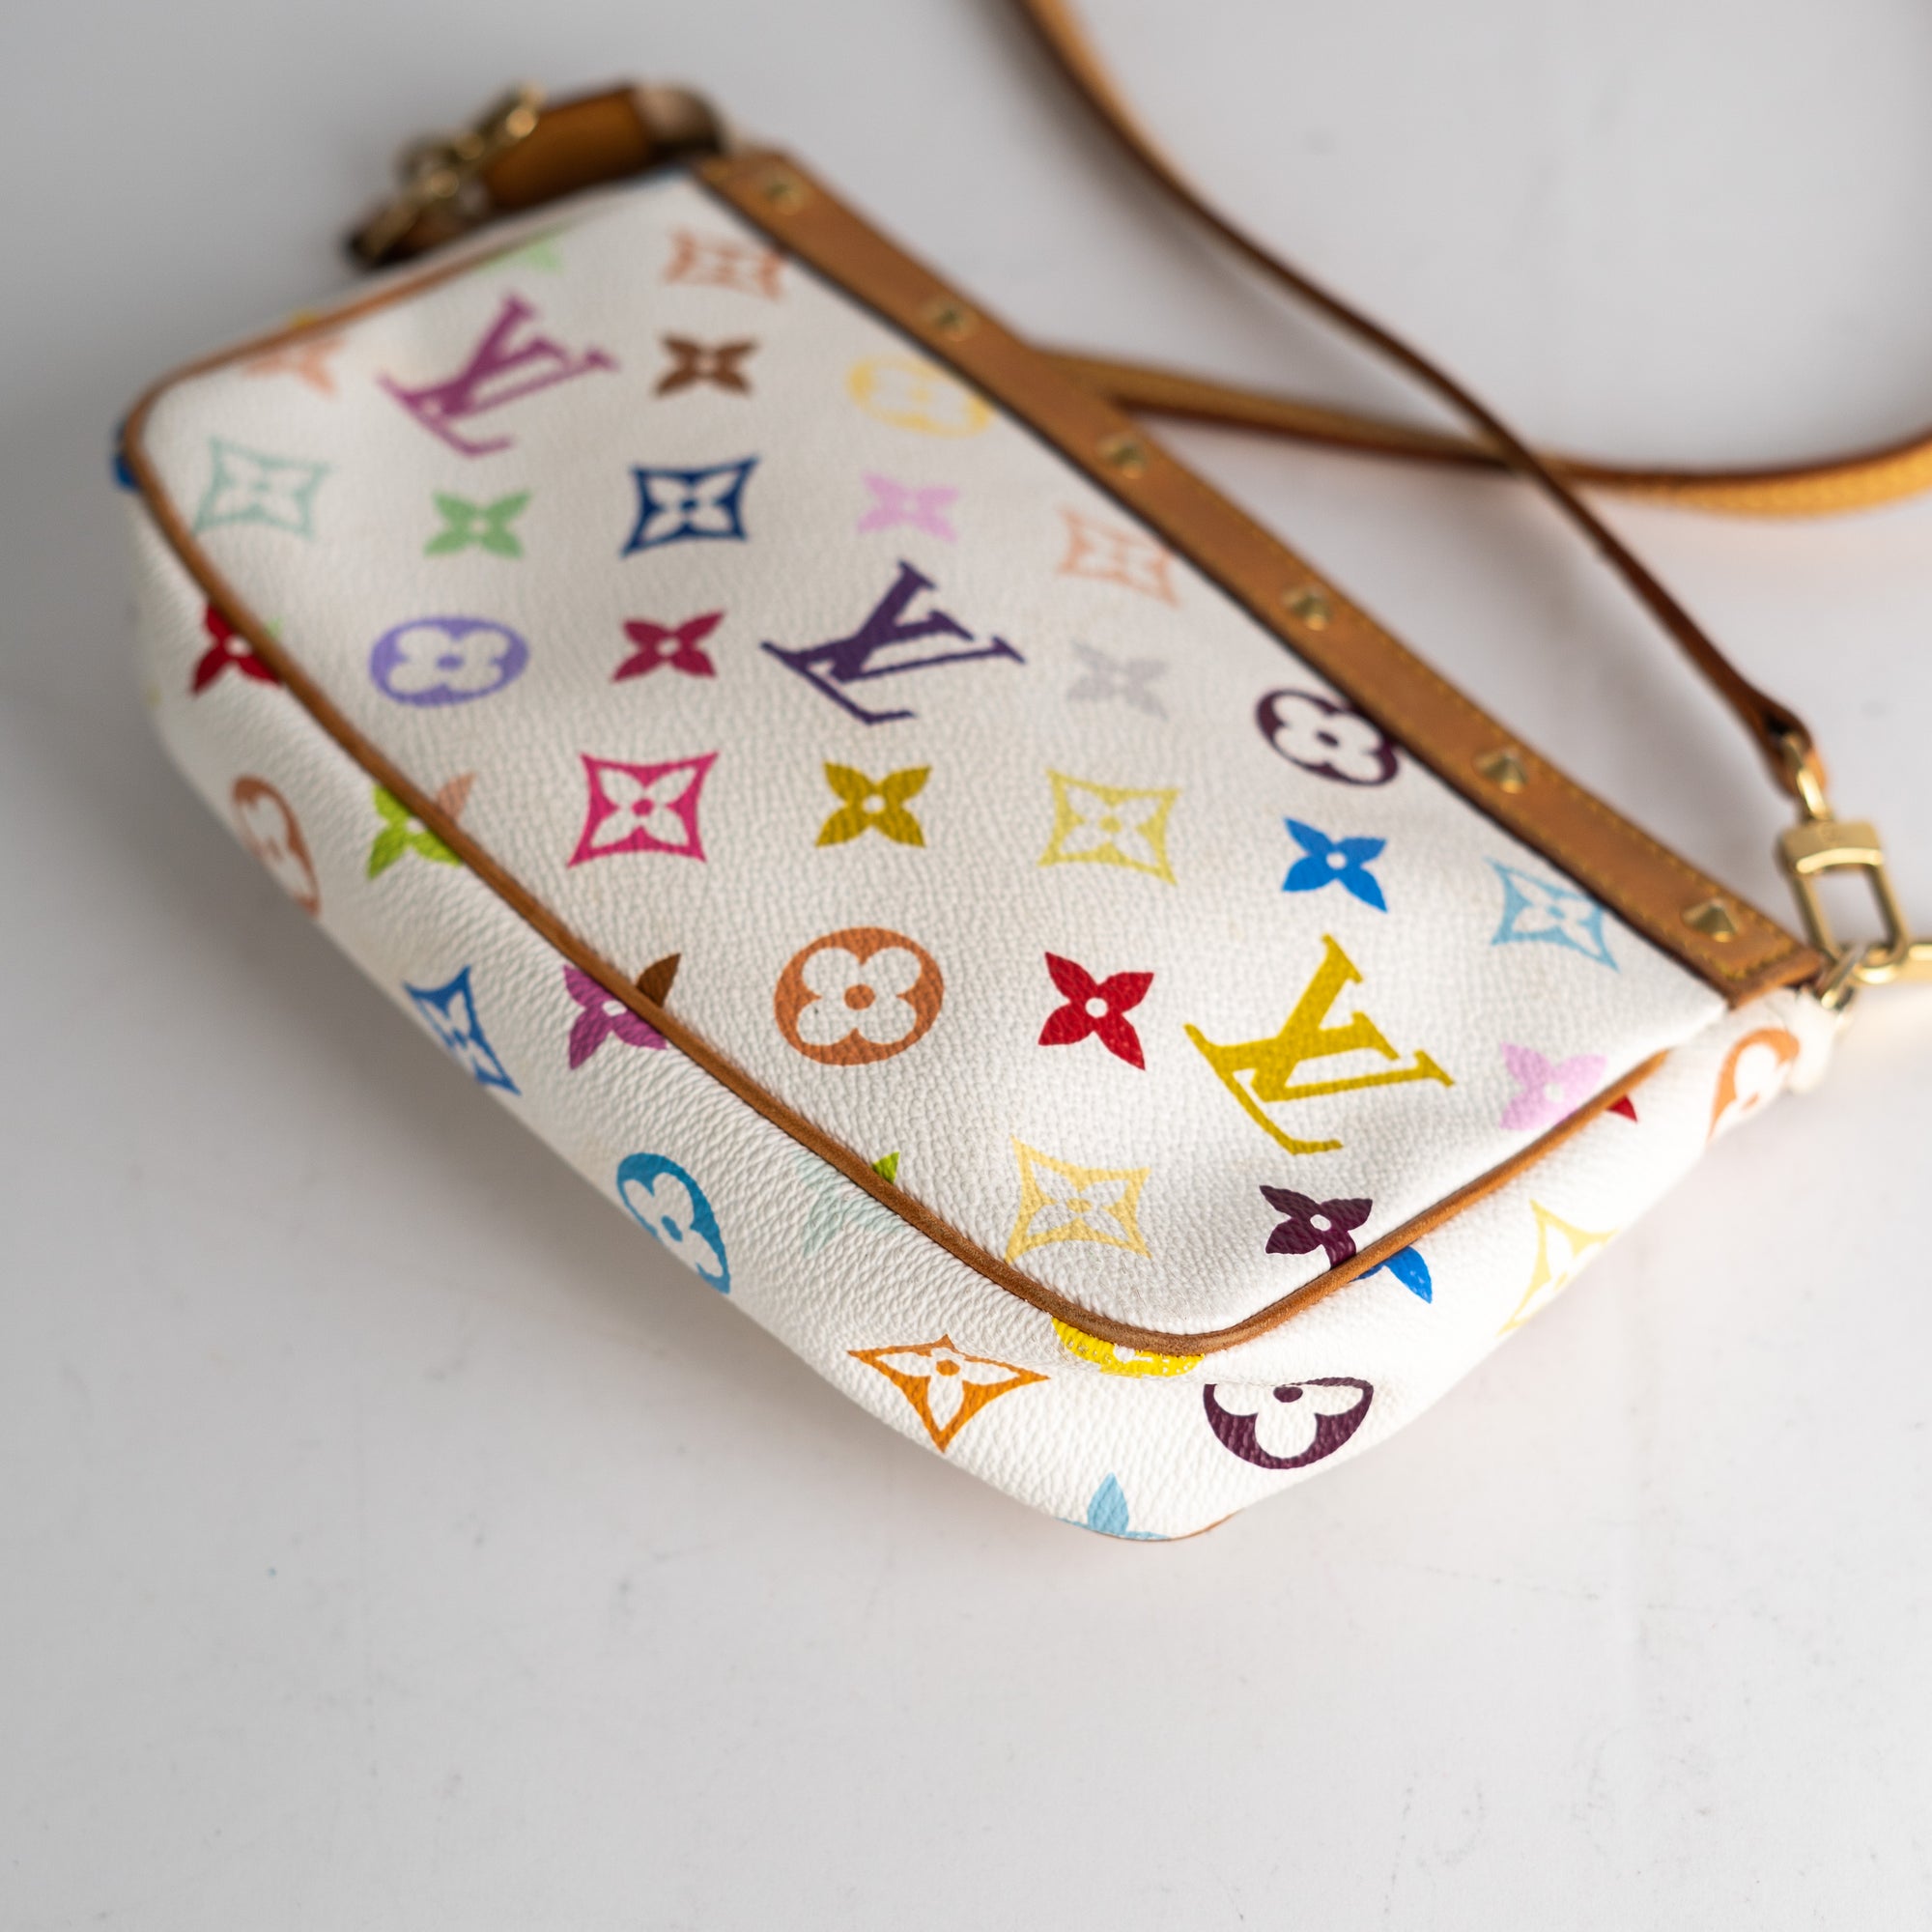 Pochette accessoire clutch bag Louis Vuitton Multicolour in Synthetic -  30632786